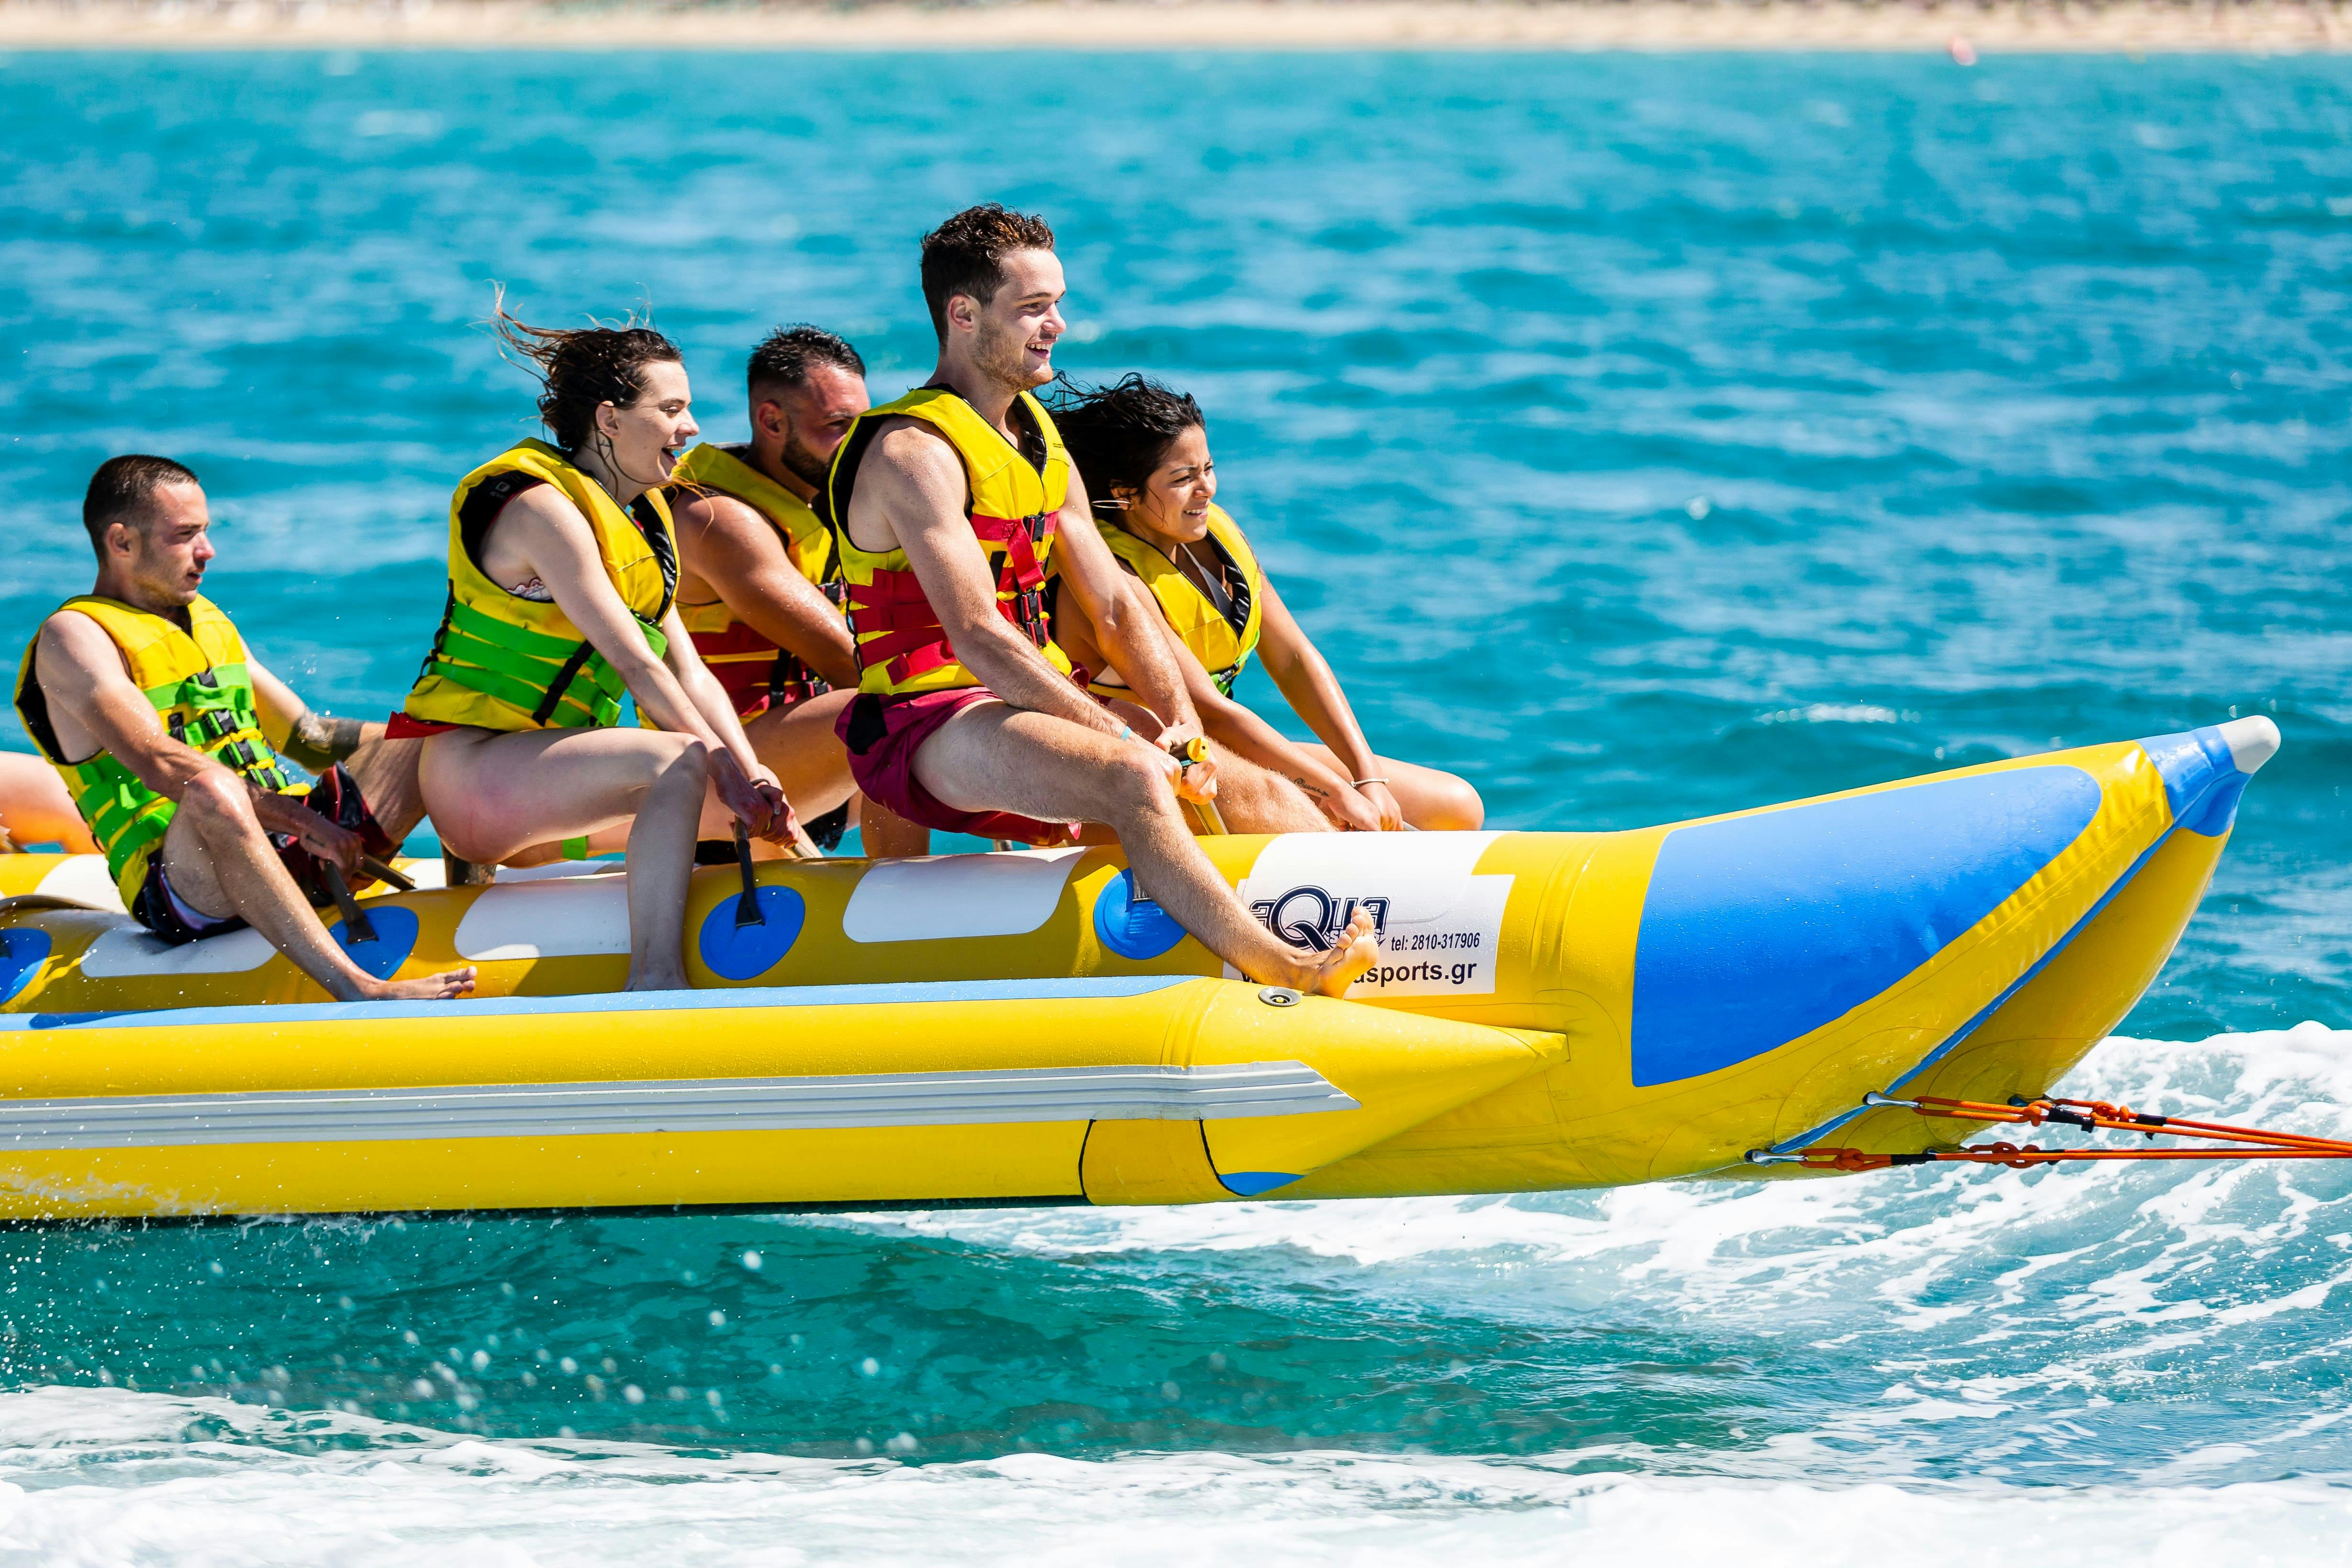 Playa de Palma Banana Boat Ticket with Life & Sea